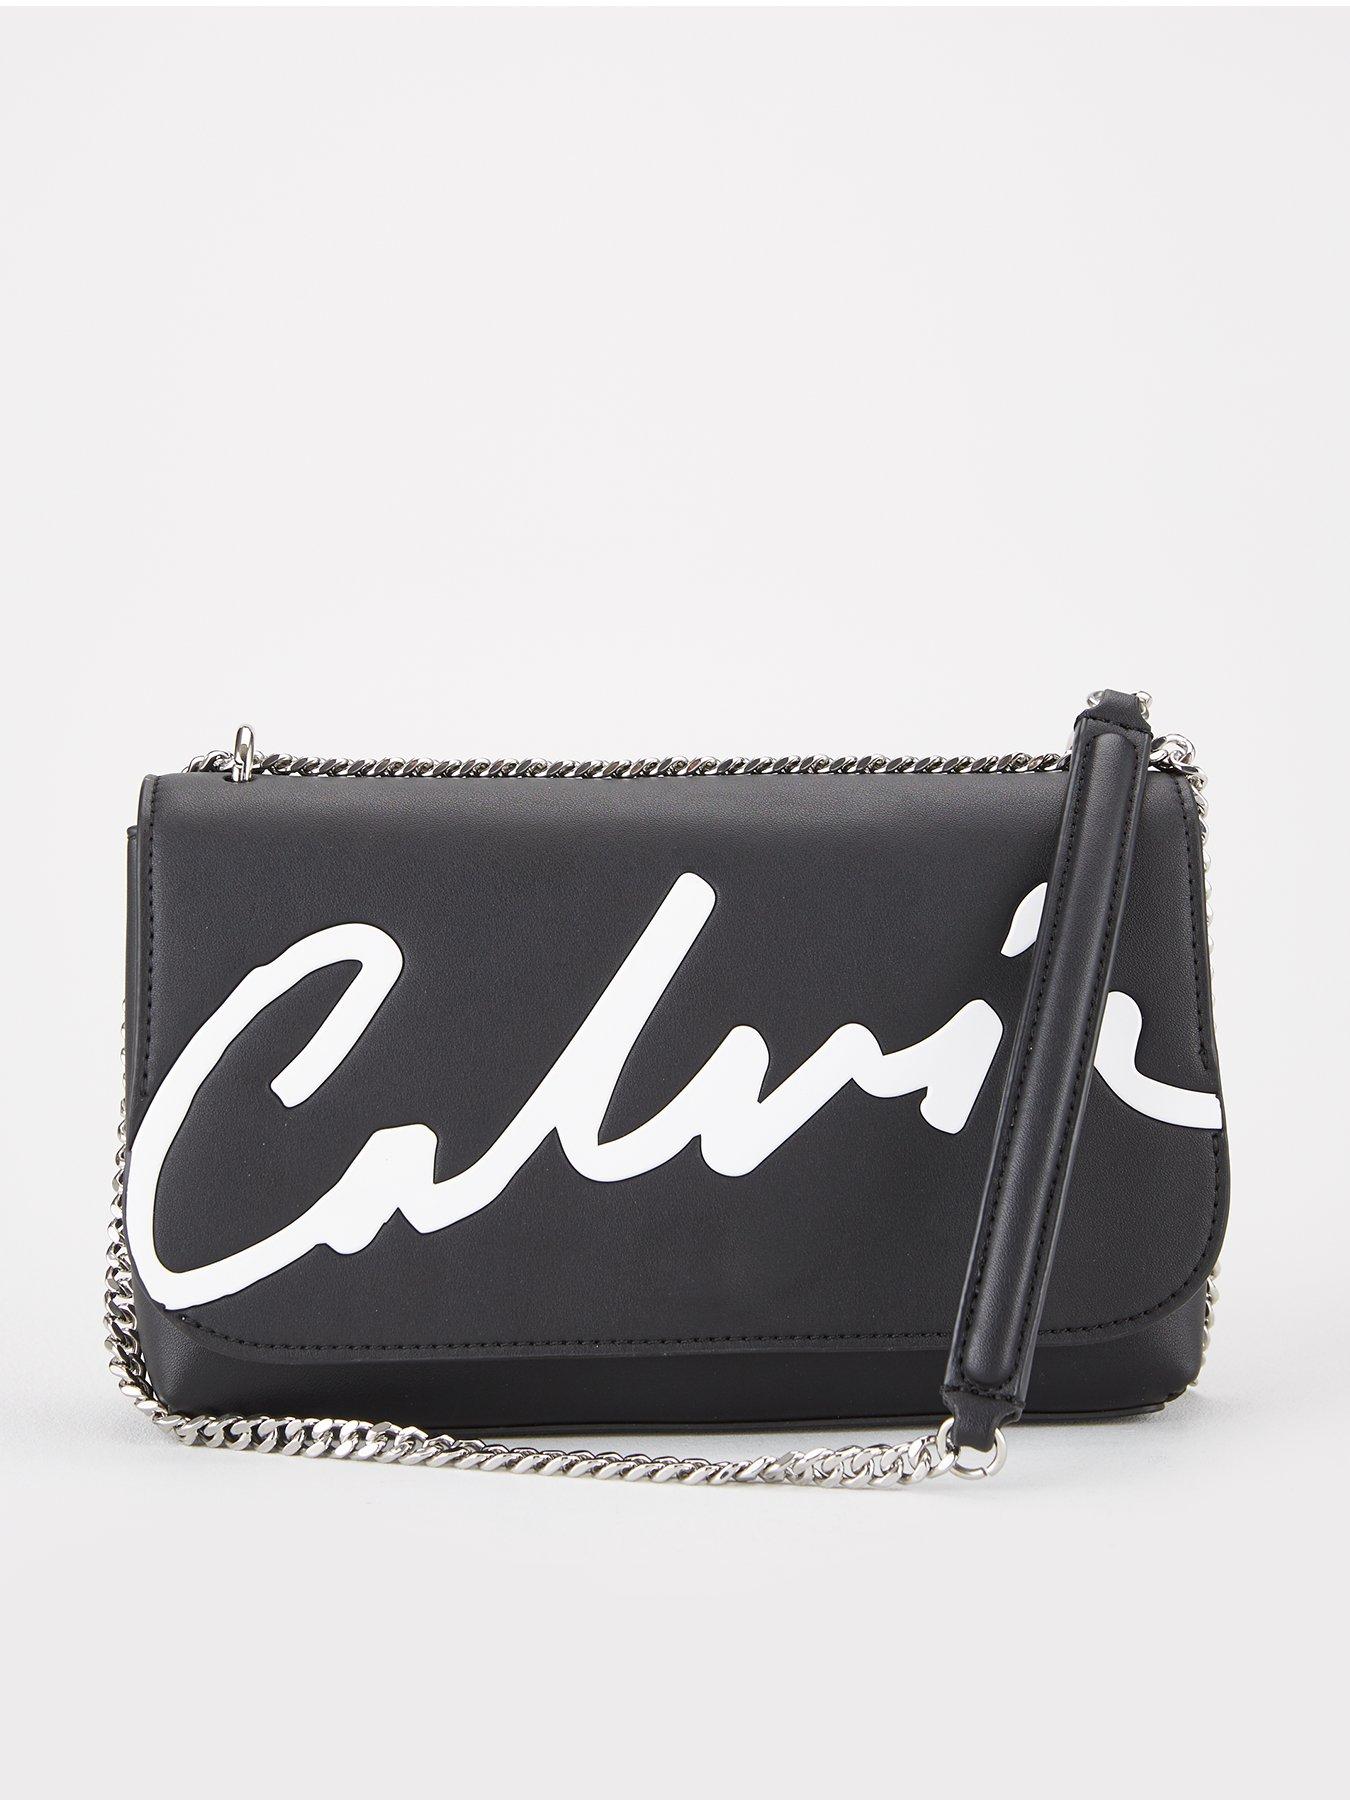 calvin klein fabric handbags